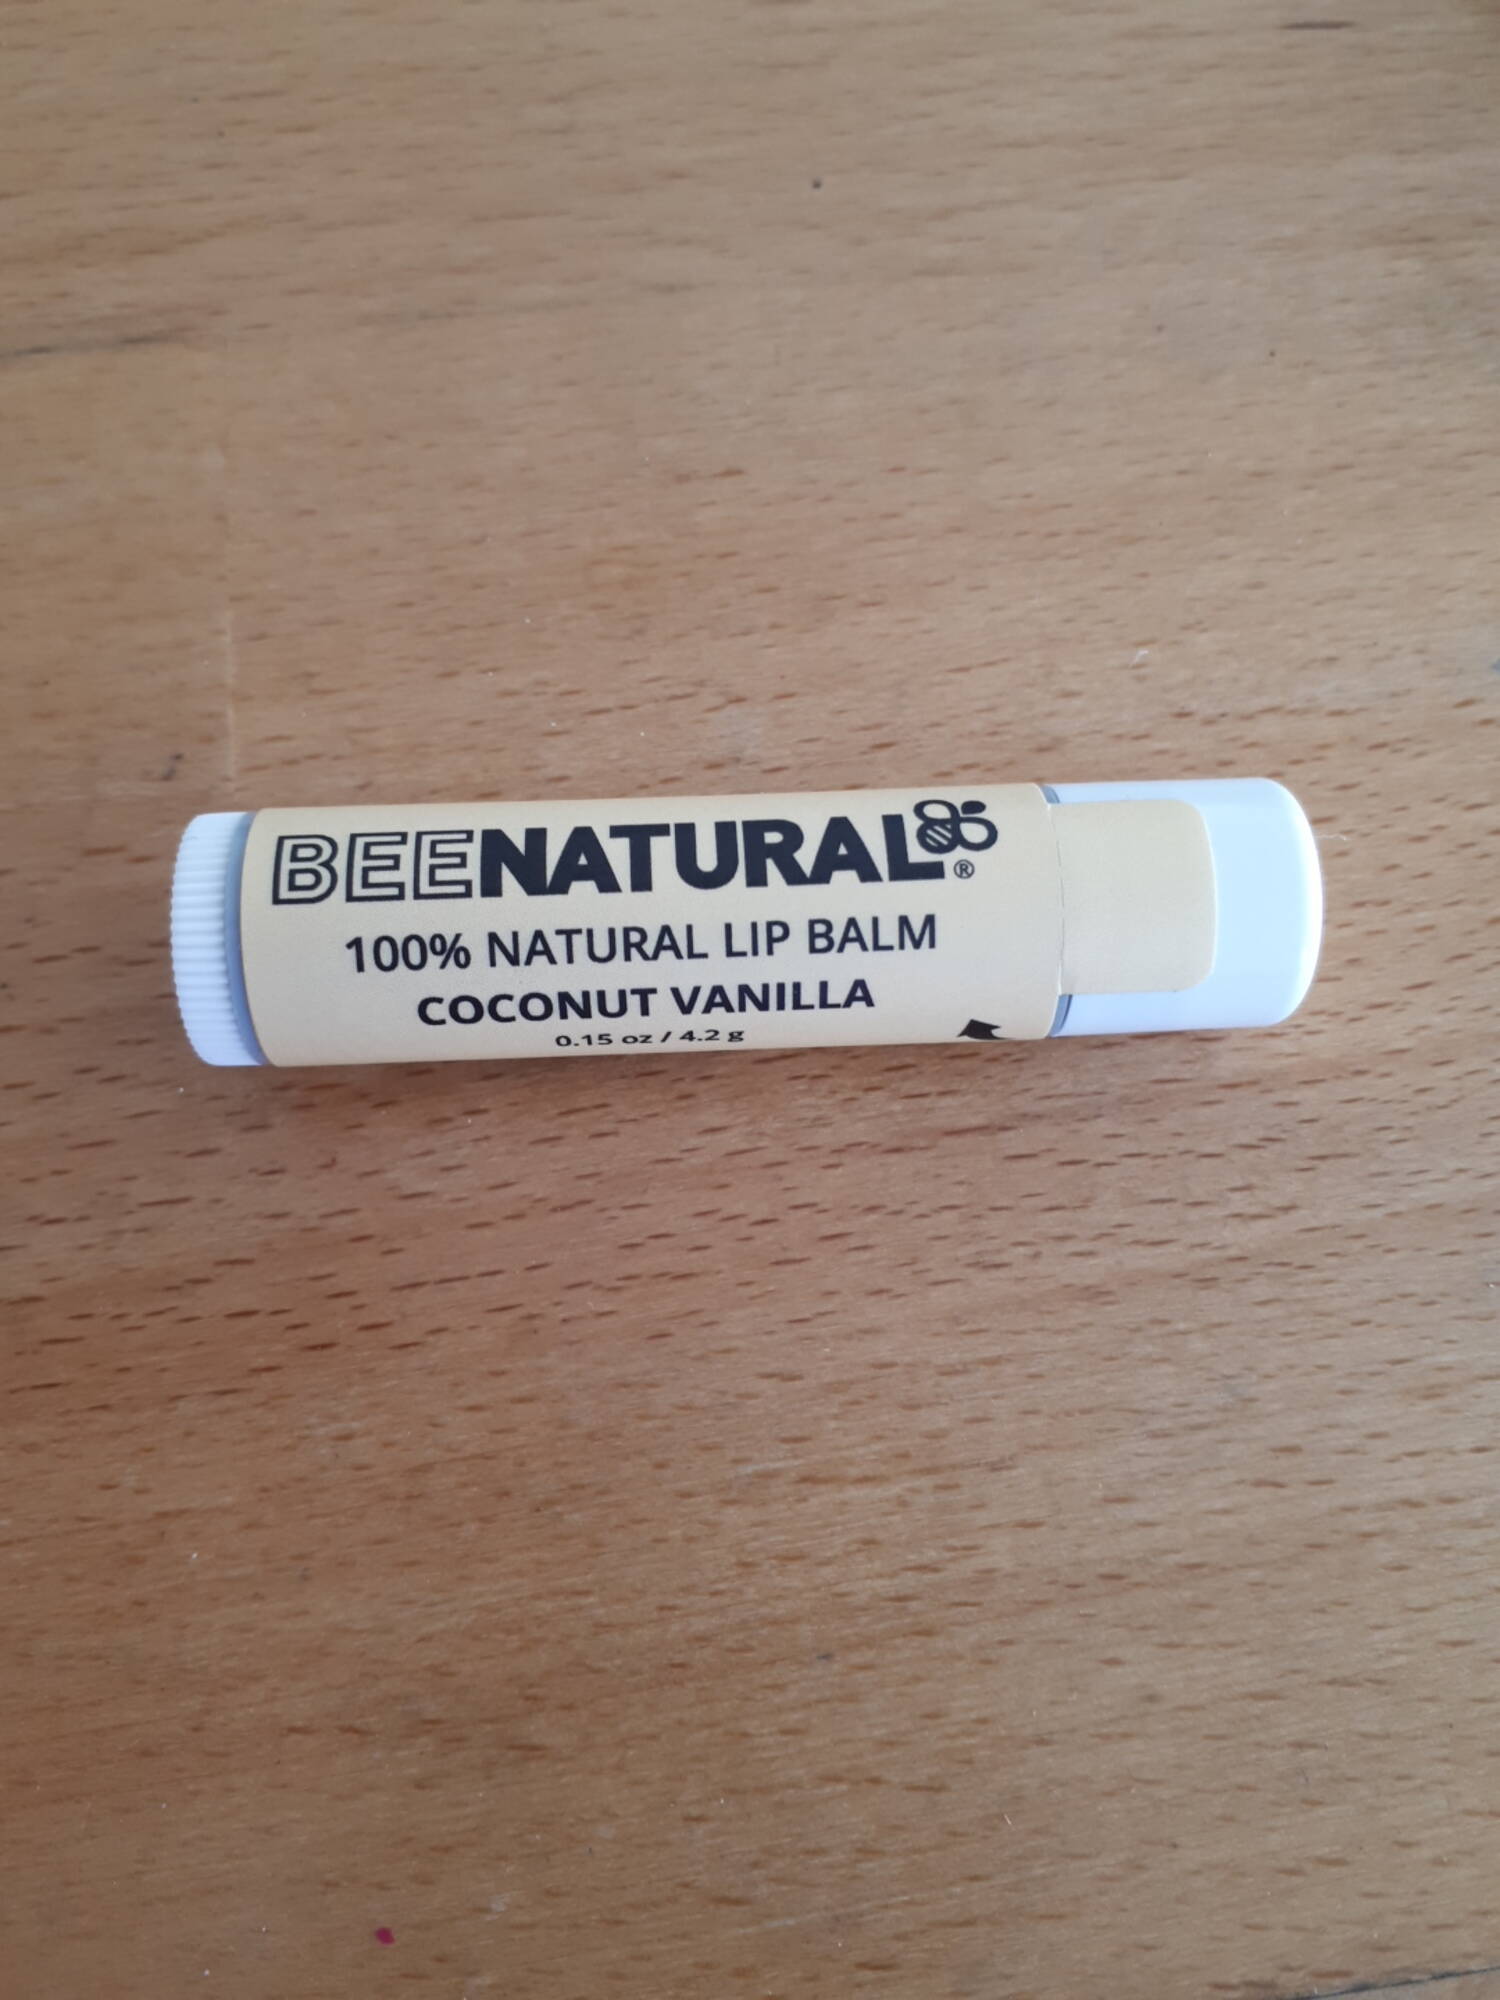 BEE NATURAL - Coconut vanilla - 100% Natural lip balm 